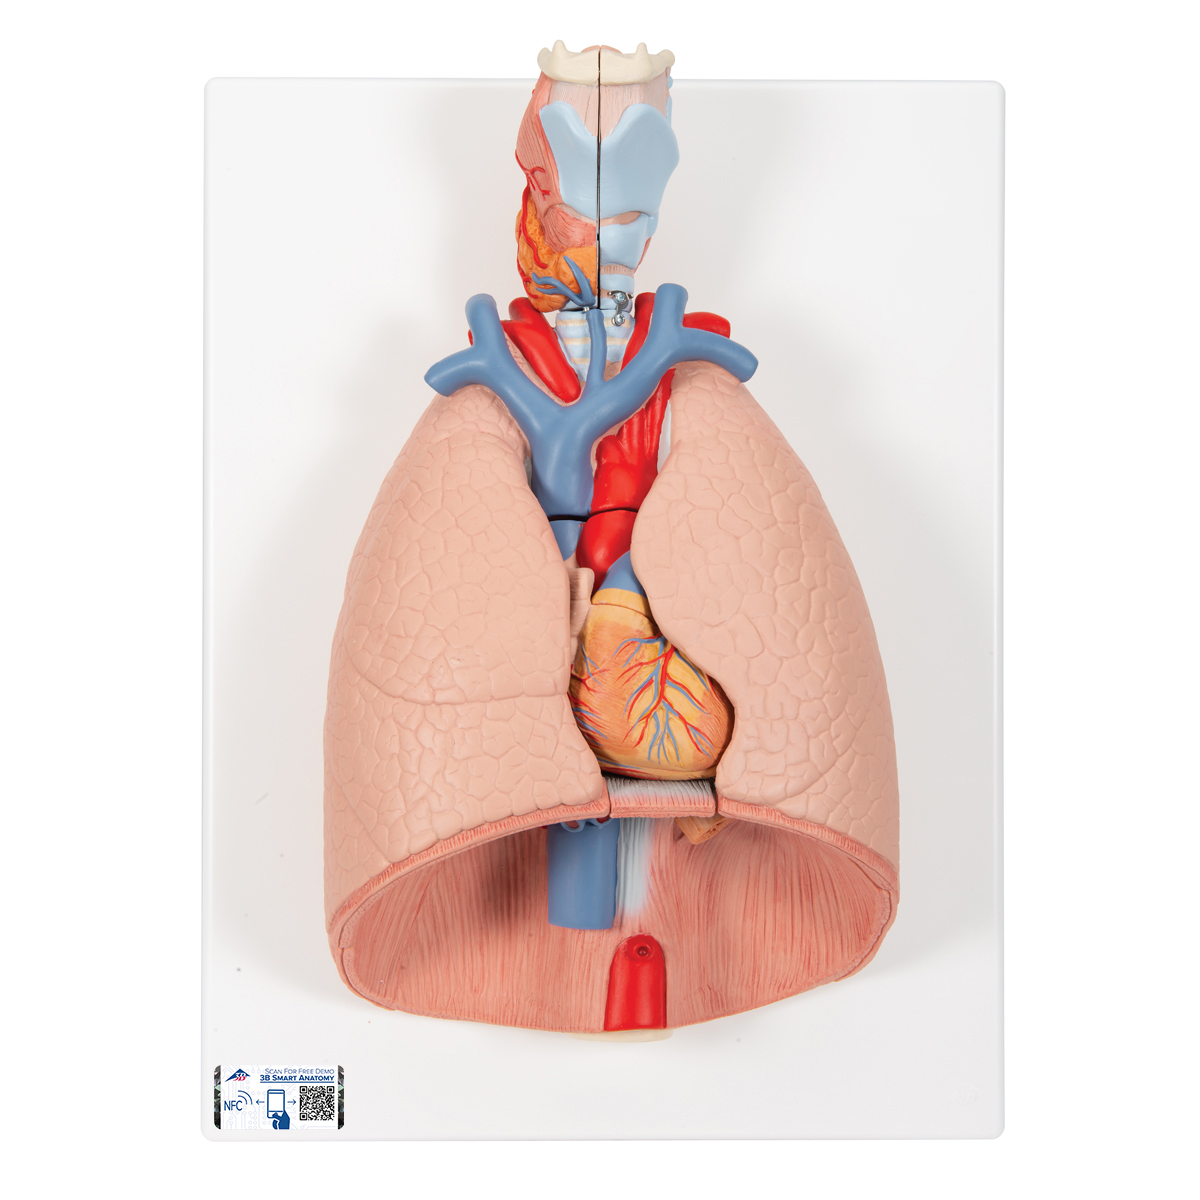 Modelo del pulmón, 7 piezas - 3B Smart Anatomy - 1000270 - 3B Scientific -  G15 - Modelos Anatómicos - Modelos Didácticos Anatomía - Modelos de Pulmón  - Modelos de Bronquios - Modelos de Sistema Respiratorio